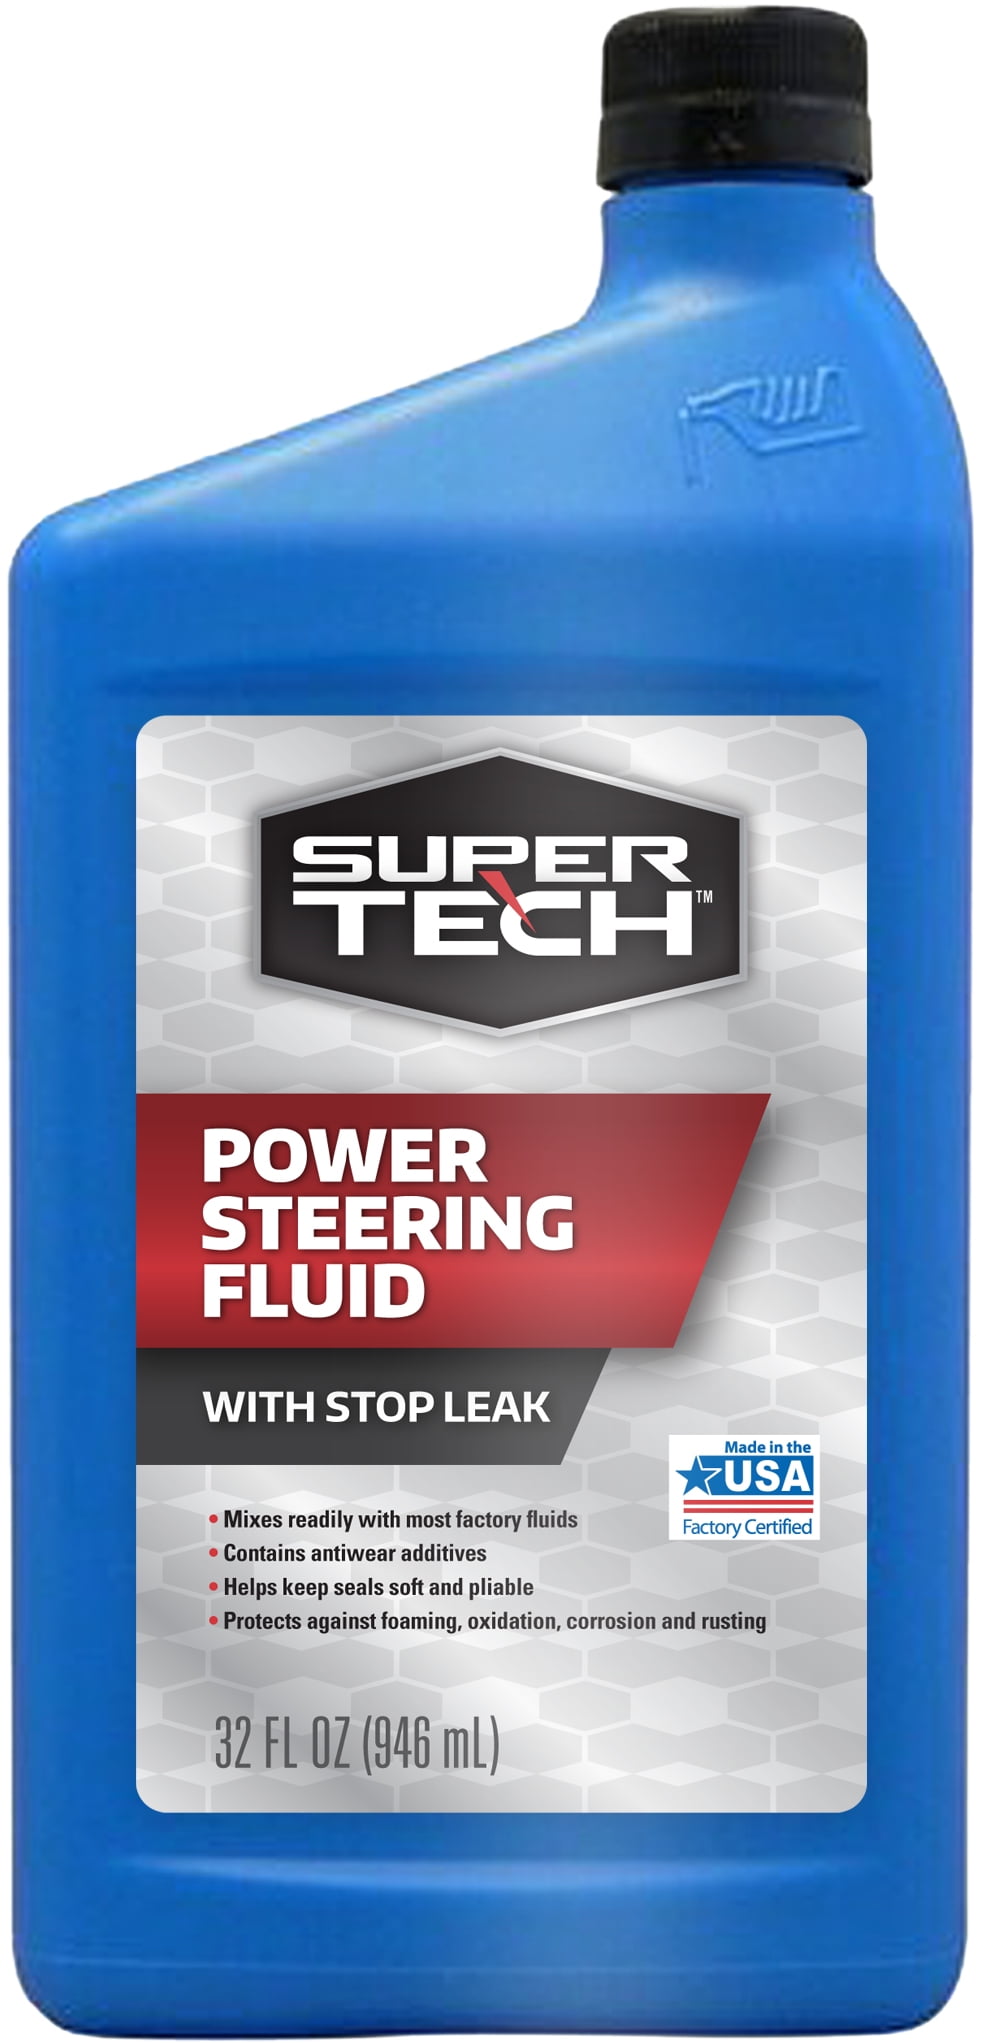 Super Tech Power Steering Fluid, 32 oz